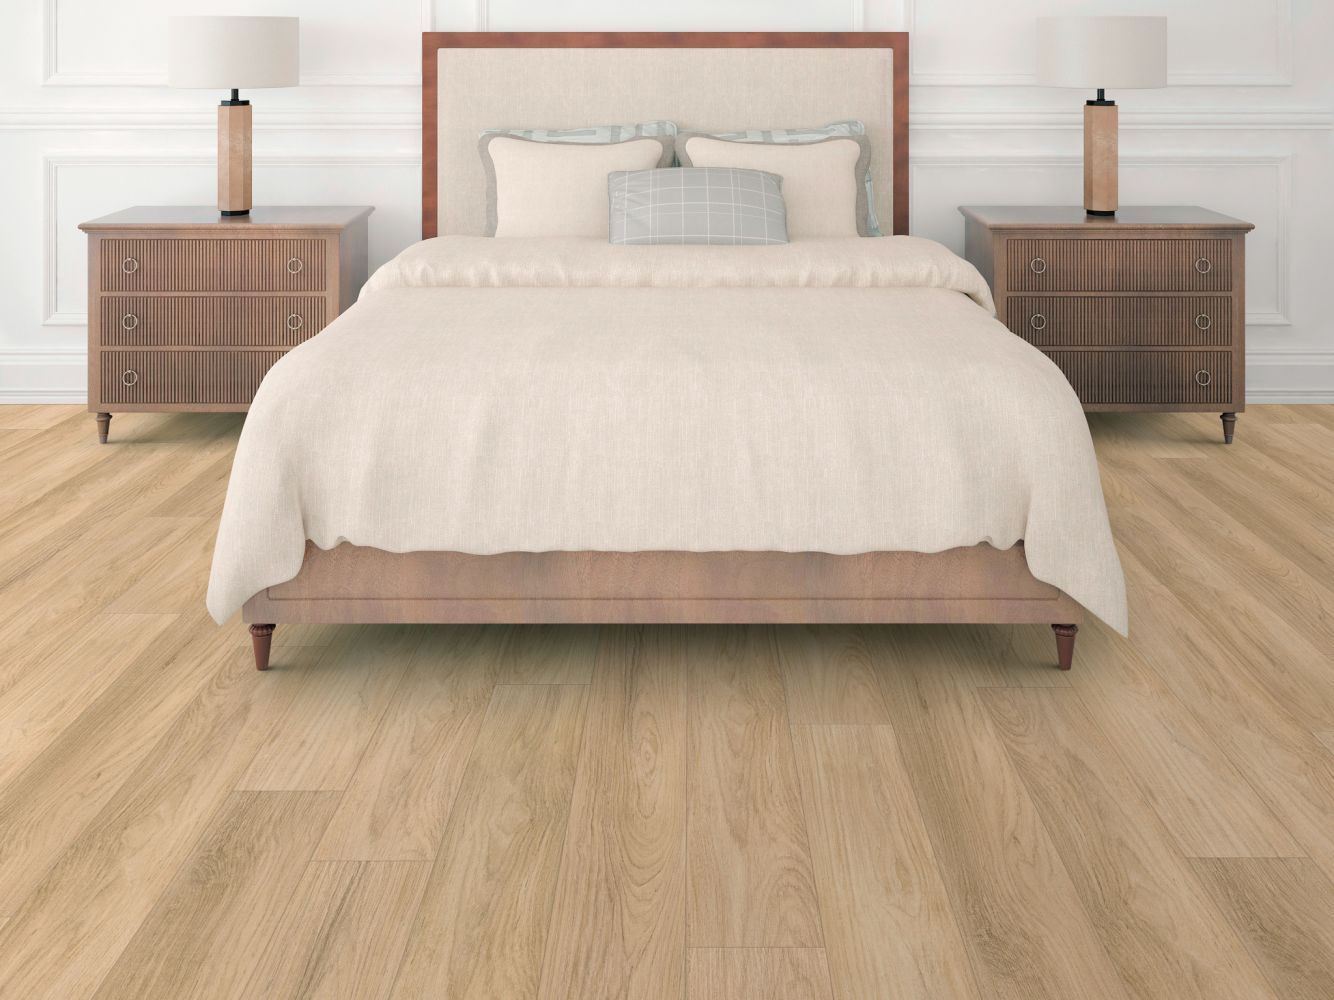 Shaw Floors Resilient Residential Distinction Plus Golden Timber 02101_2045V